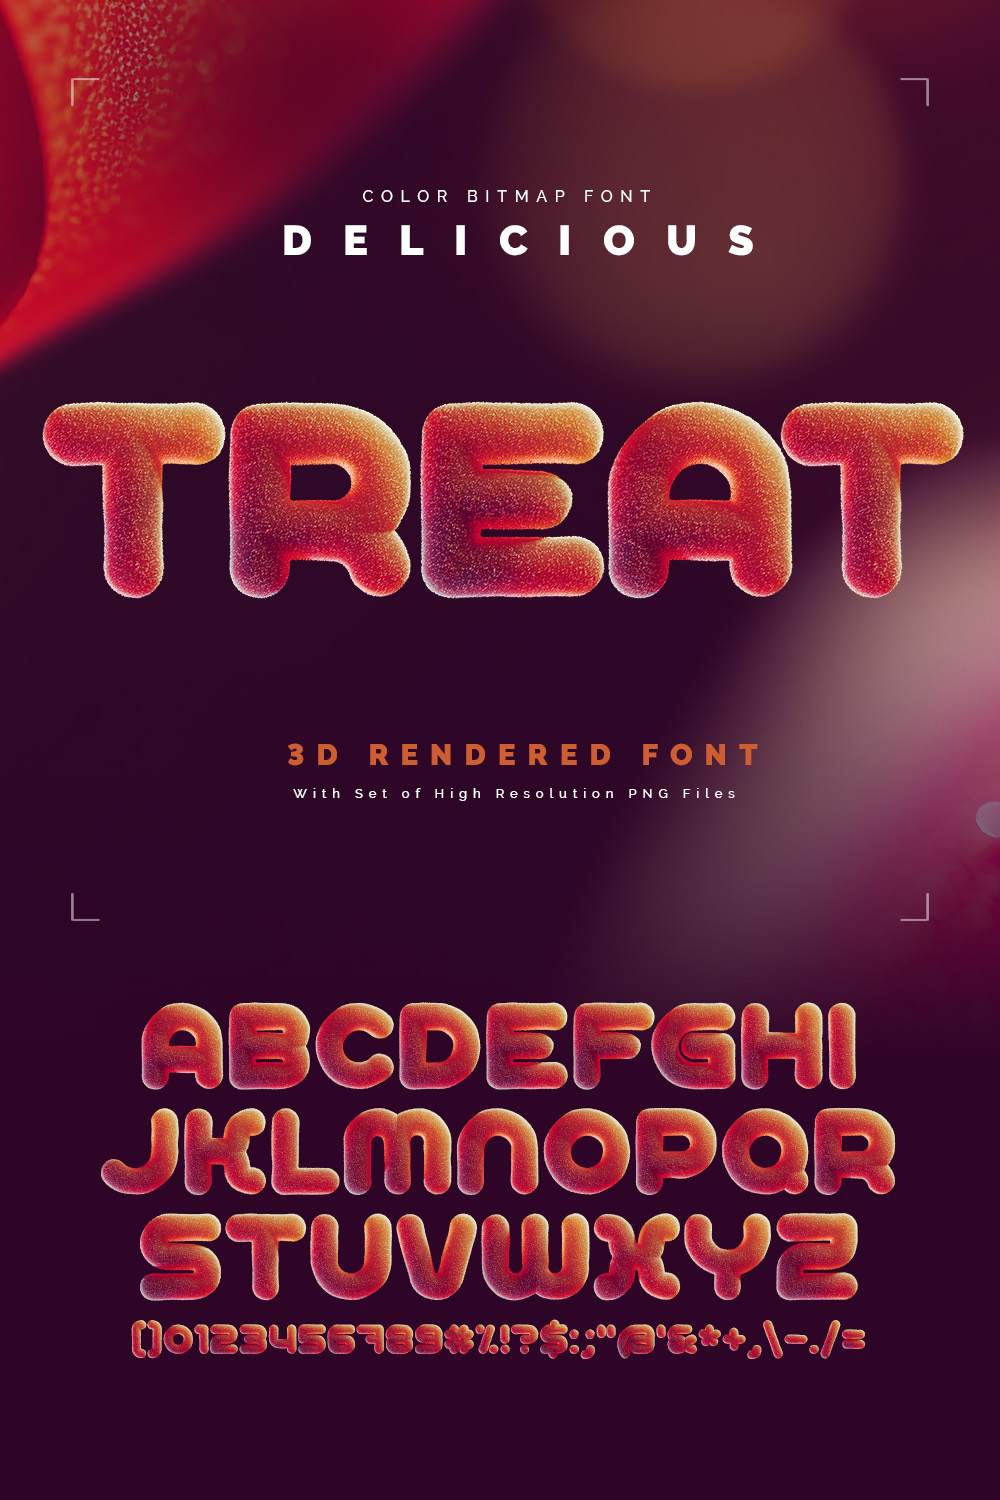 Delicious Treat — Color Bitmap Font pinterest preview image.